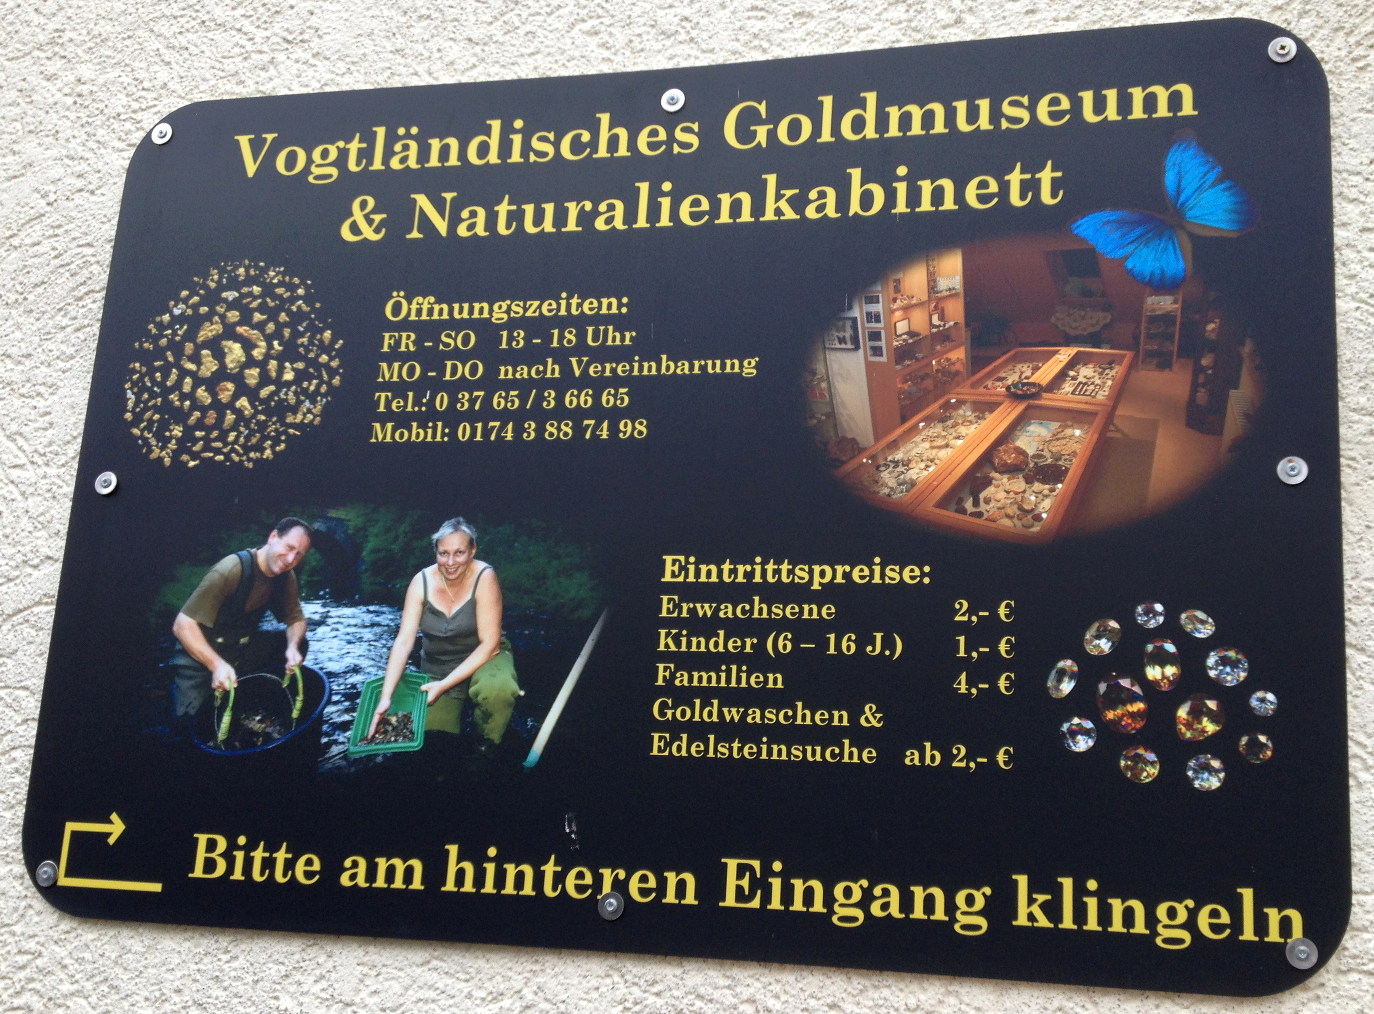 Haustafel "Vogtlndisches Goldmuseum & Naturalienkabinett"